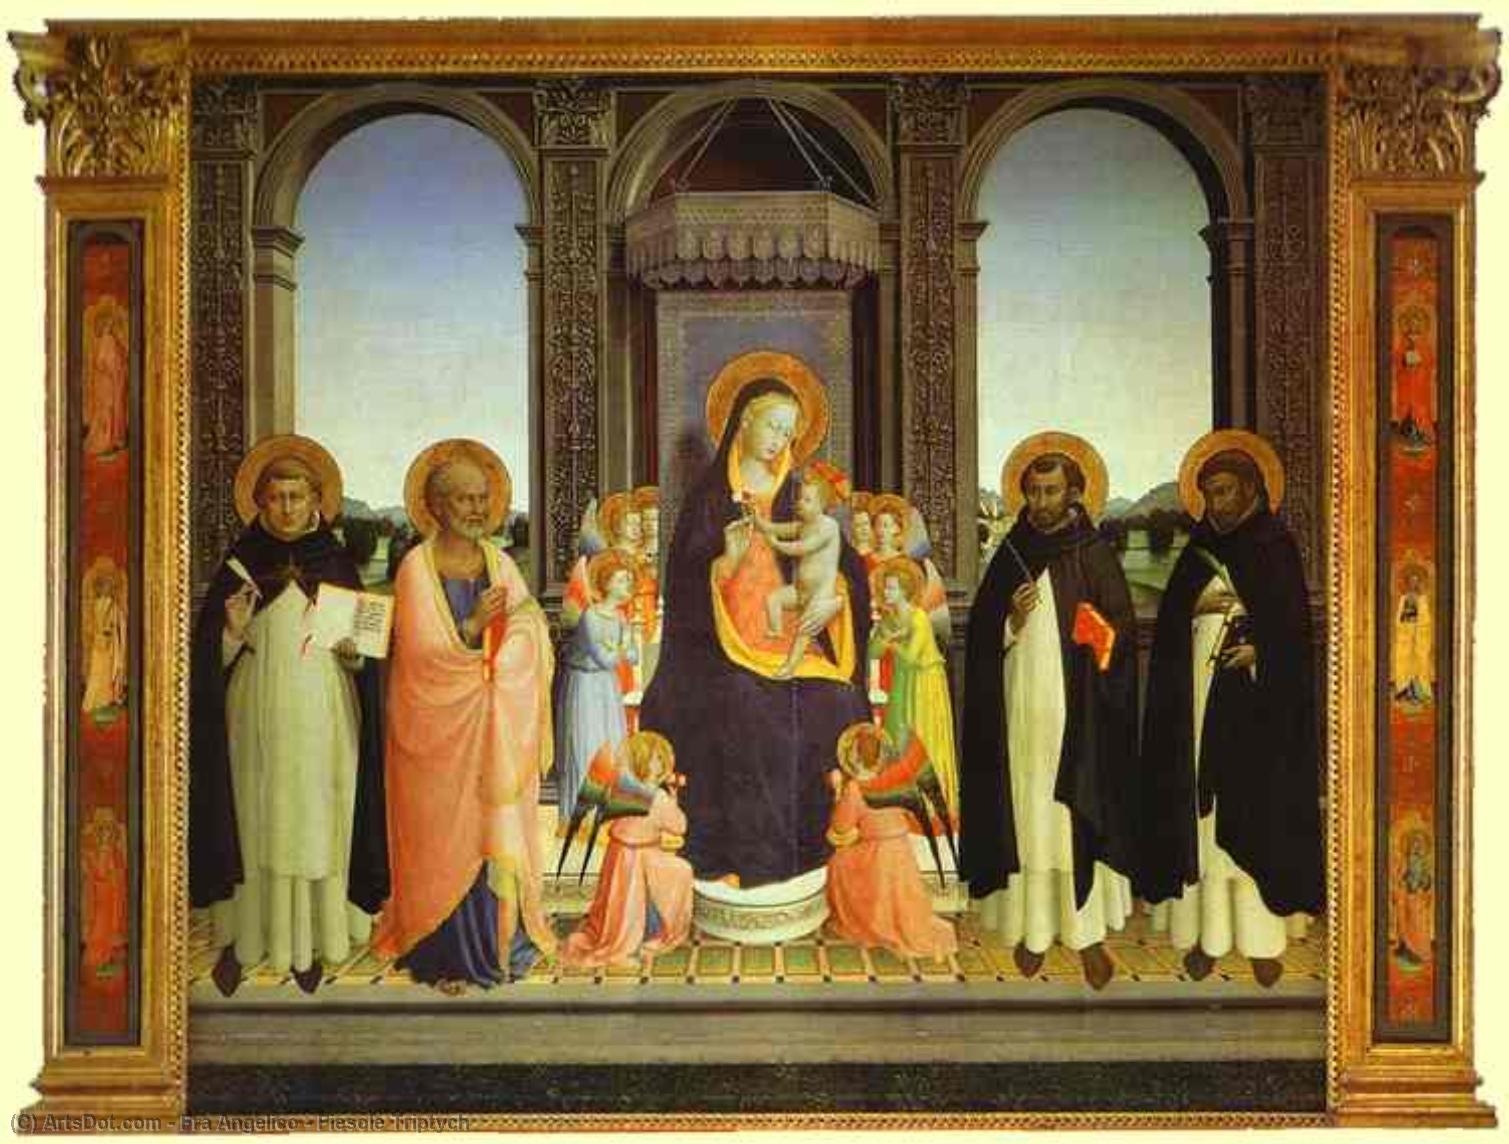 WikiOO.org - אנציקלופדיה לאמנויות יפות - ציור, יצירות אמנות Fra Angelico - Fiesole Triptych